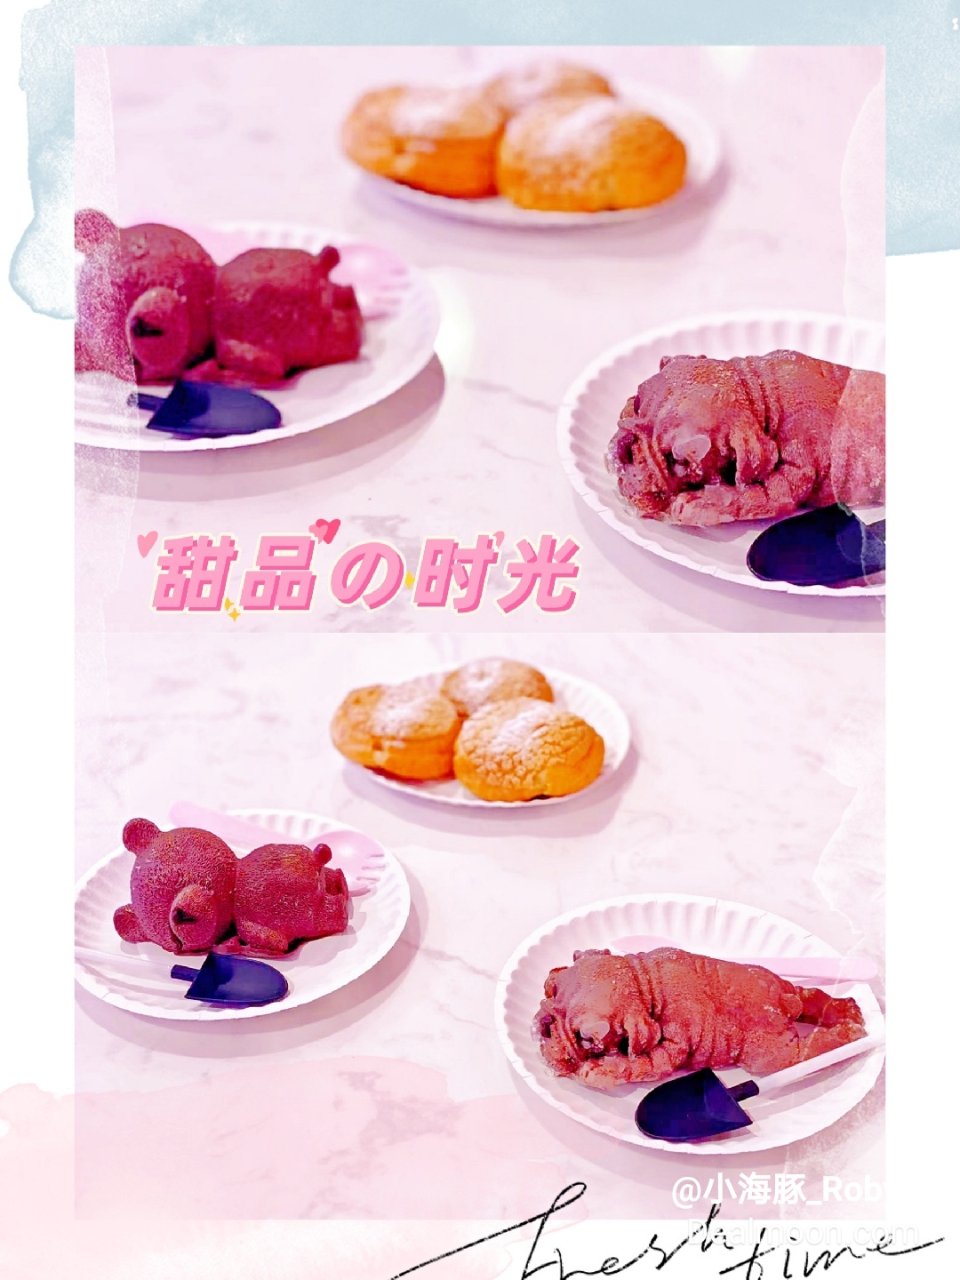 粉色系列网红甜品店 ▏Sweet Cat...